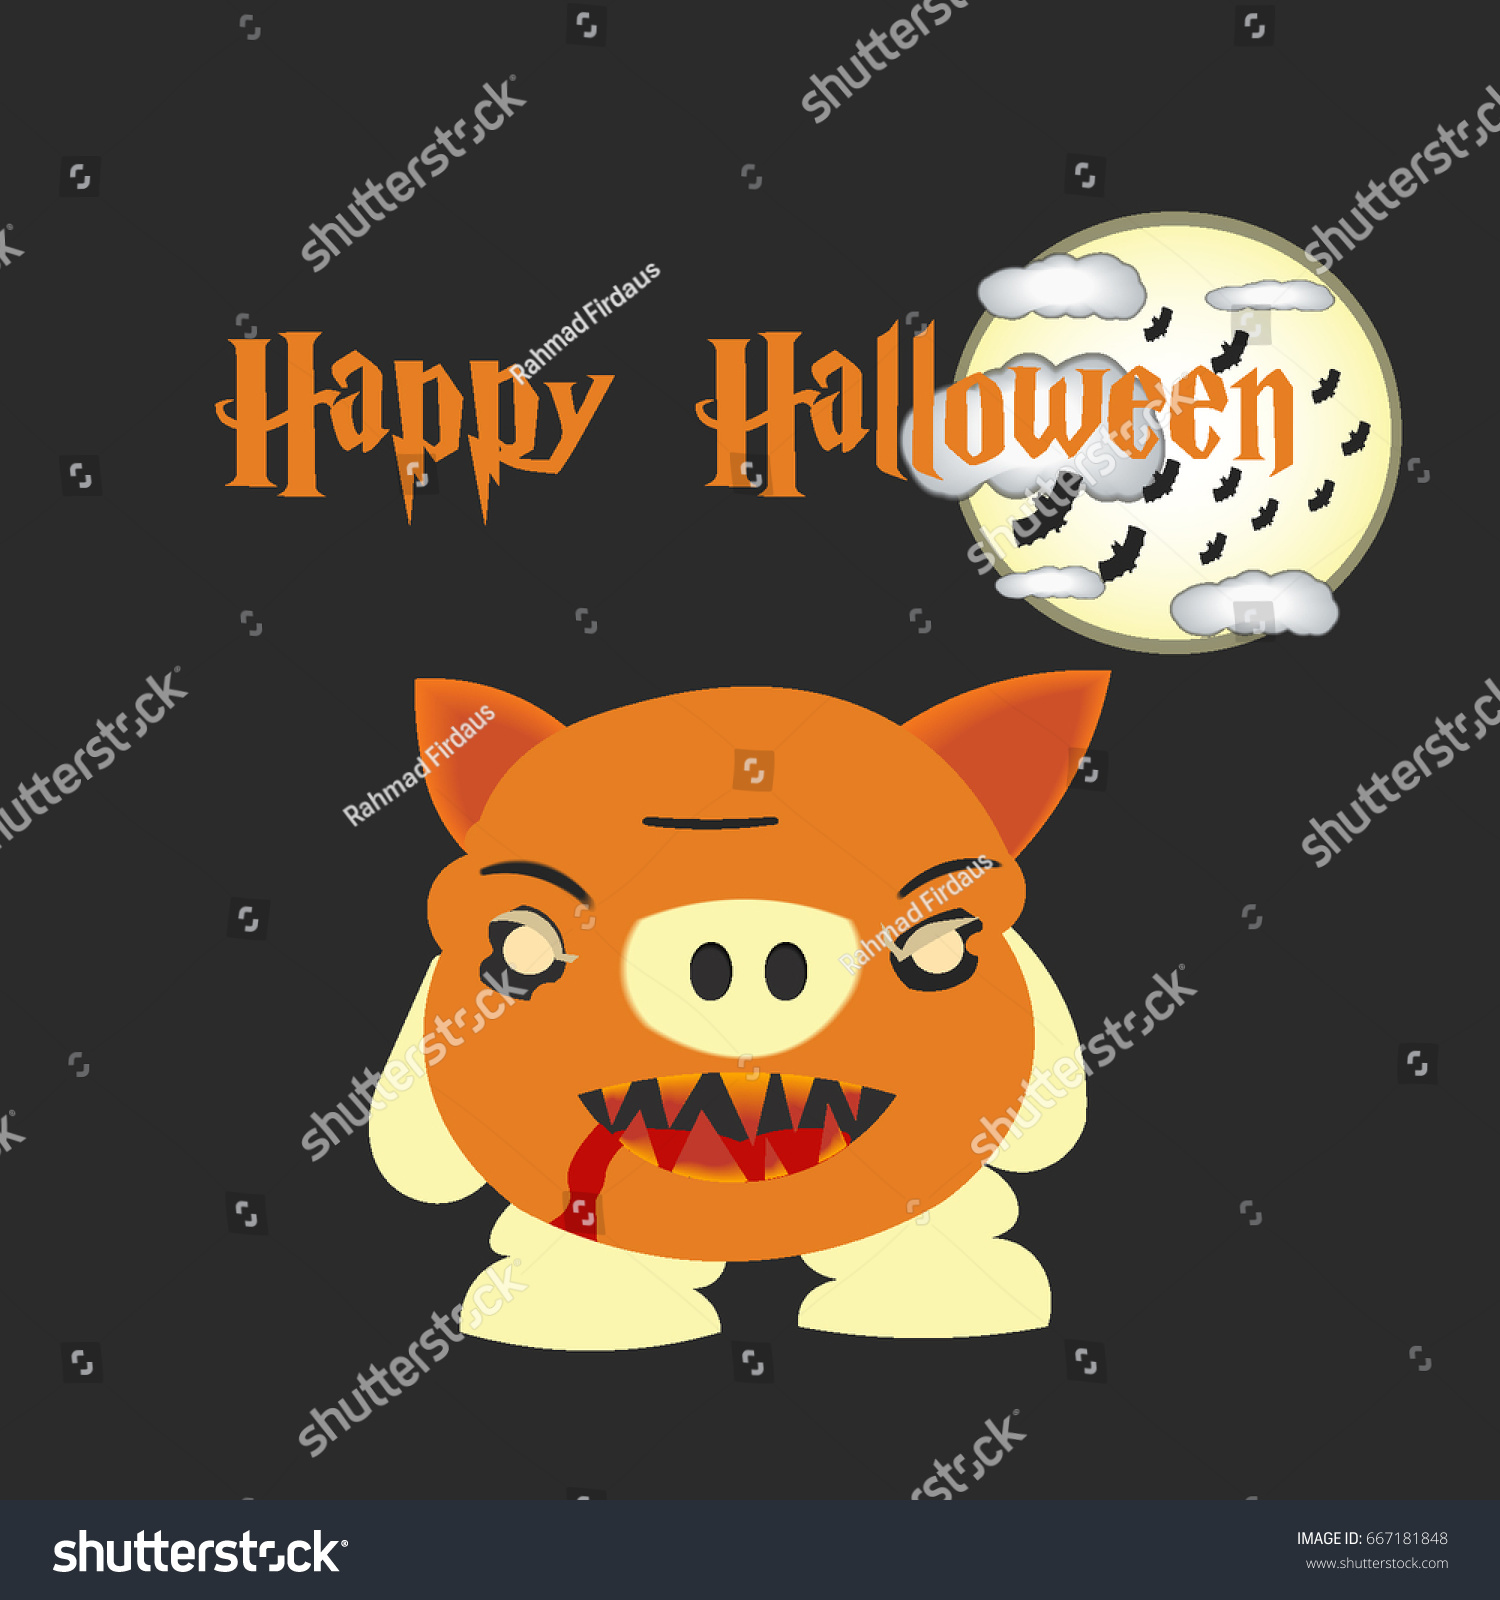 Halloween vector illustration #667181848